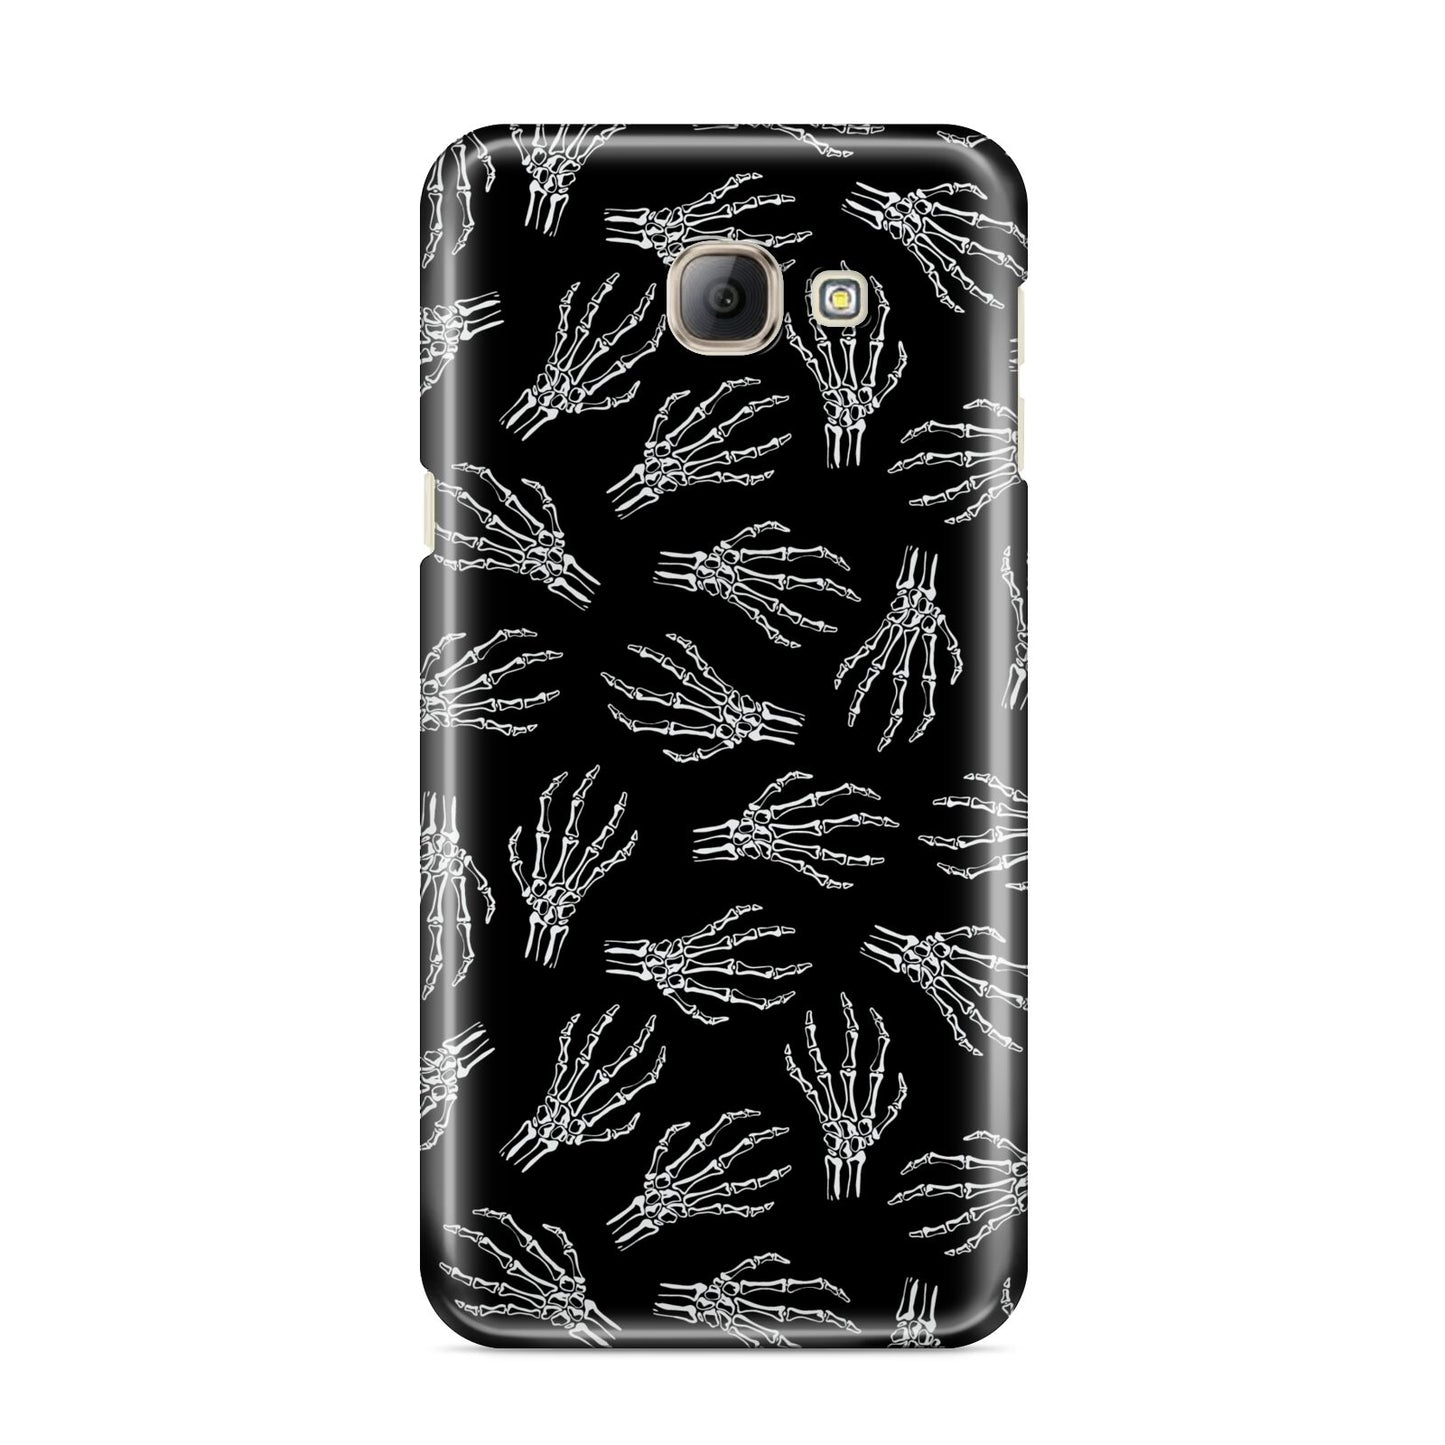 Skeleton Hands Samsung Galaxy A8 2016 Case